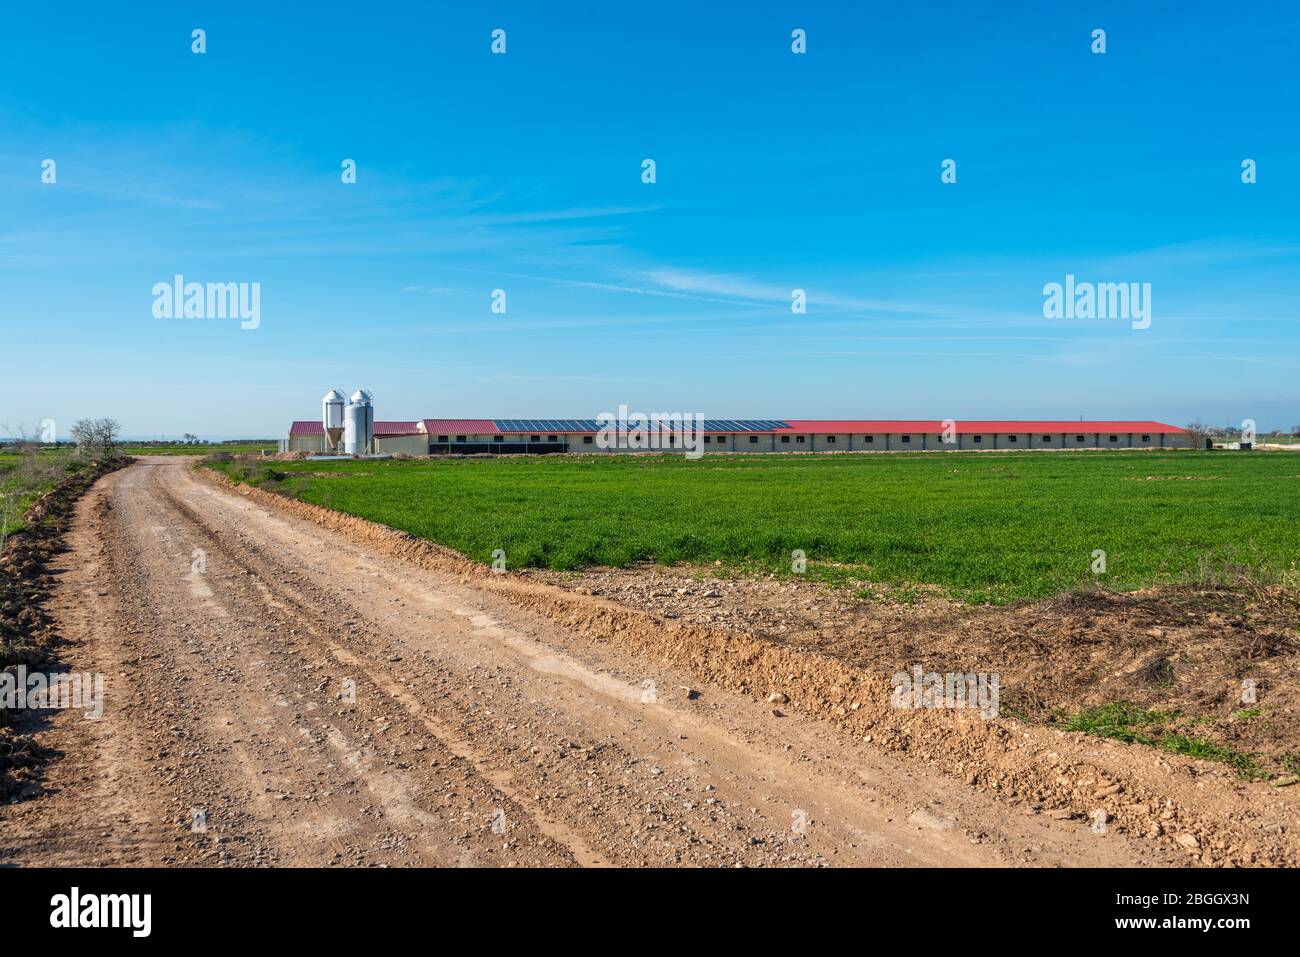 19 febbraio 2020 - Belianes-Preixana, Spagna. Un'azienda agricola industriale con pannelli solari sul tetto, nelle pianure di Belianes-Preixana. Foto Stock